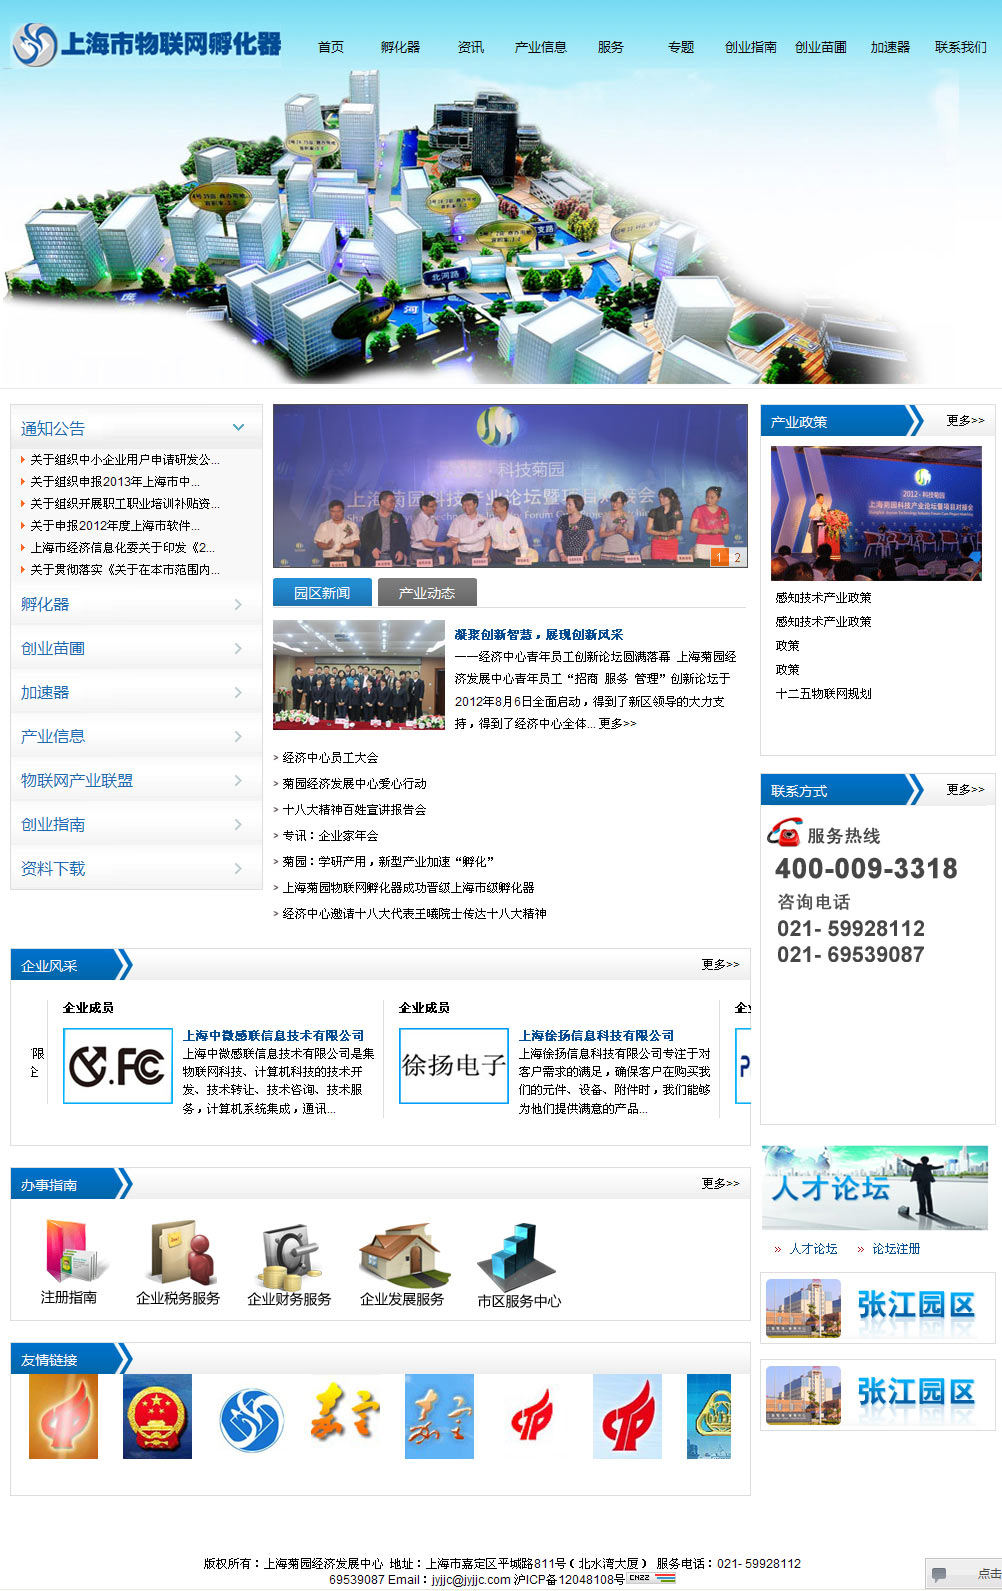 上海菊园物联网孵化器